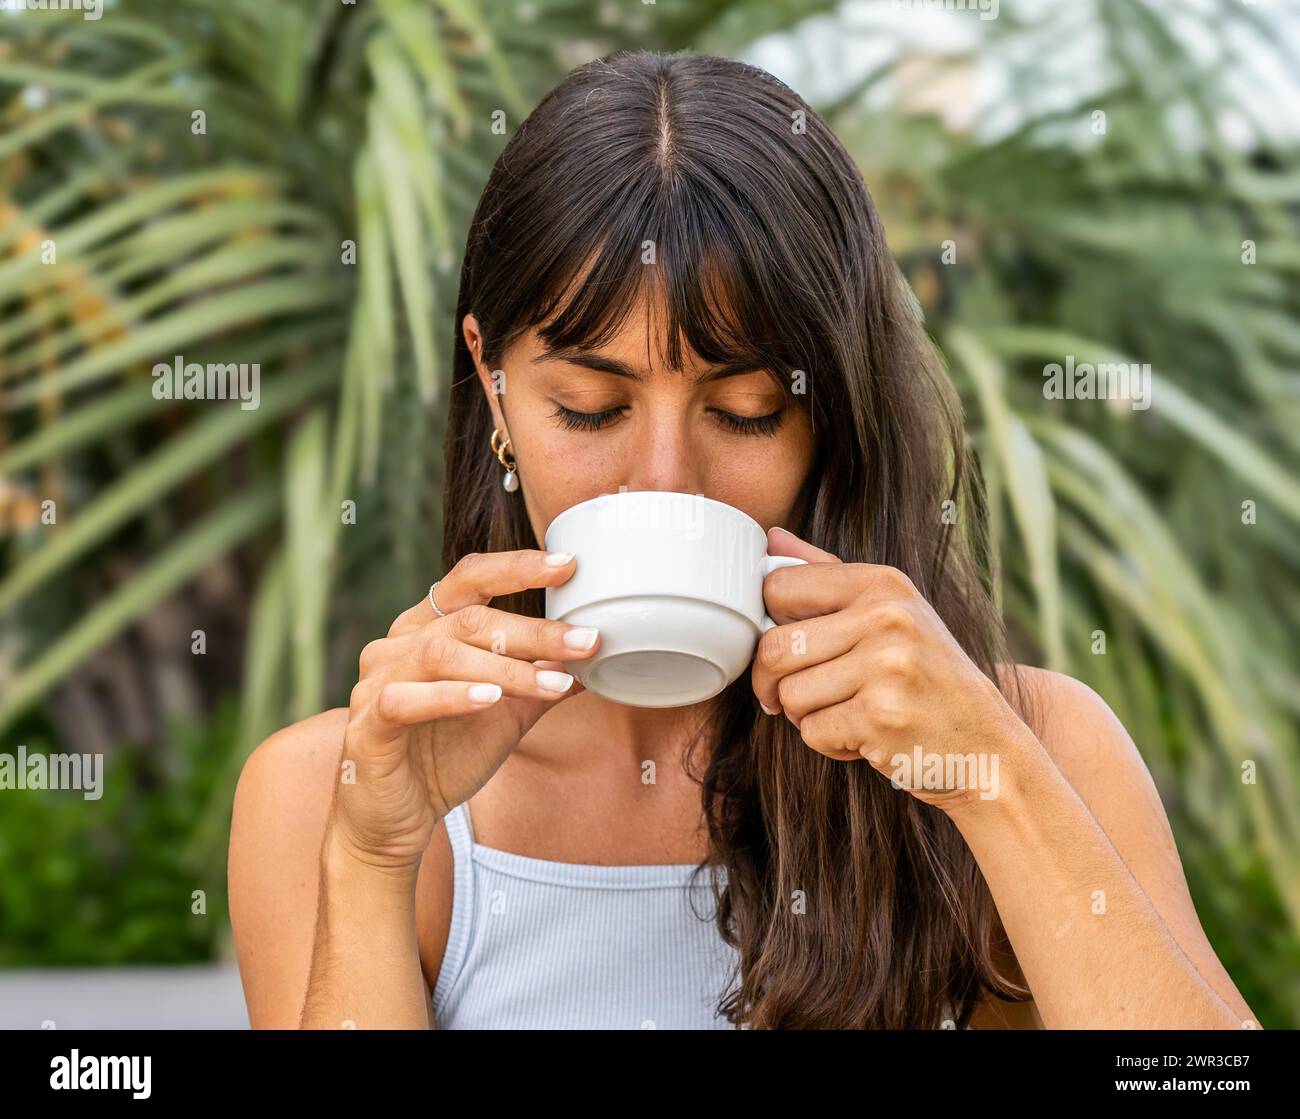 Una donna beve caffè da una tazza bianca con gli occhi chiusi. Indossa una canotta e i capelli vengono tirati indietro Foto Stock